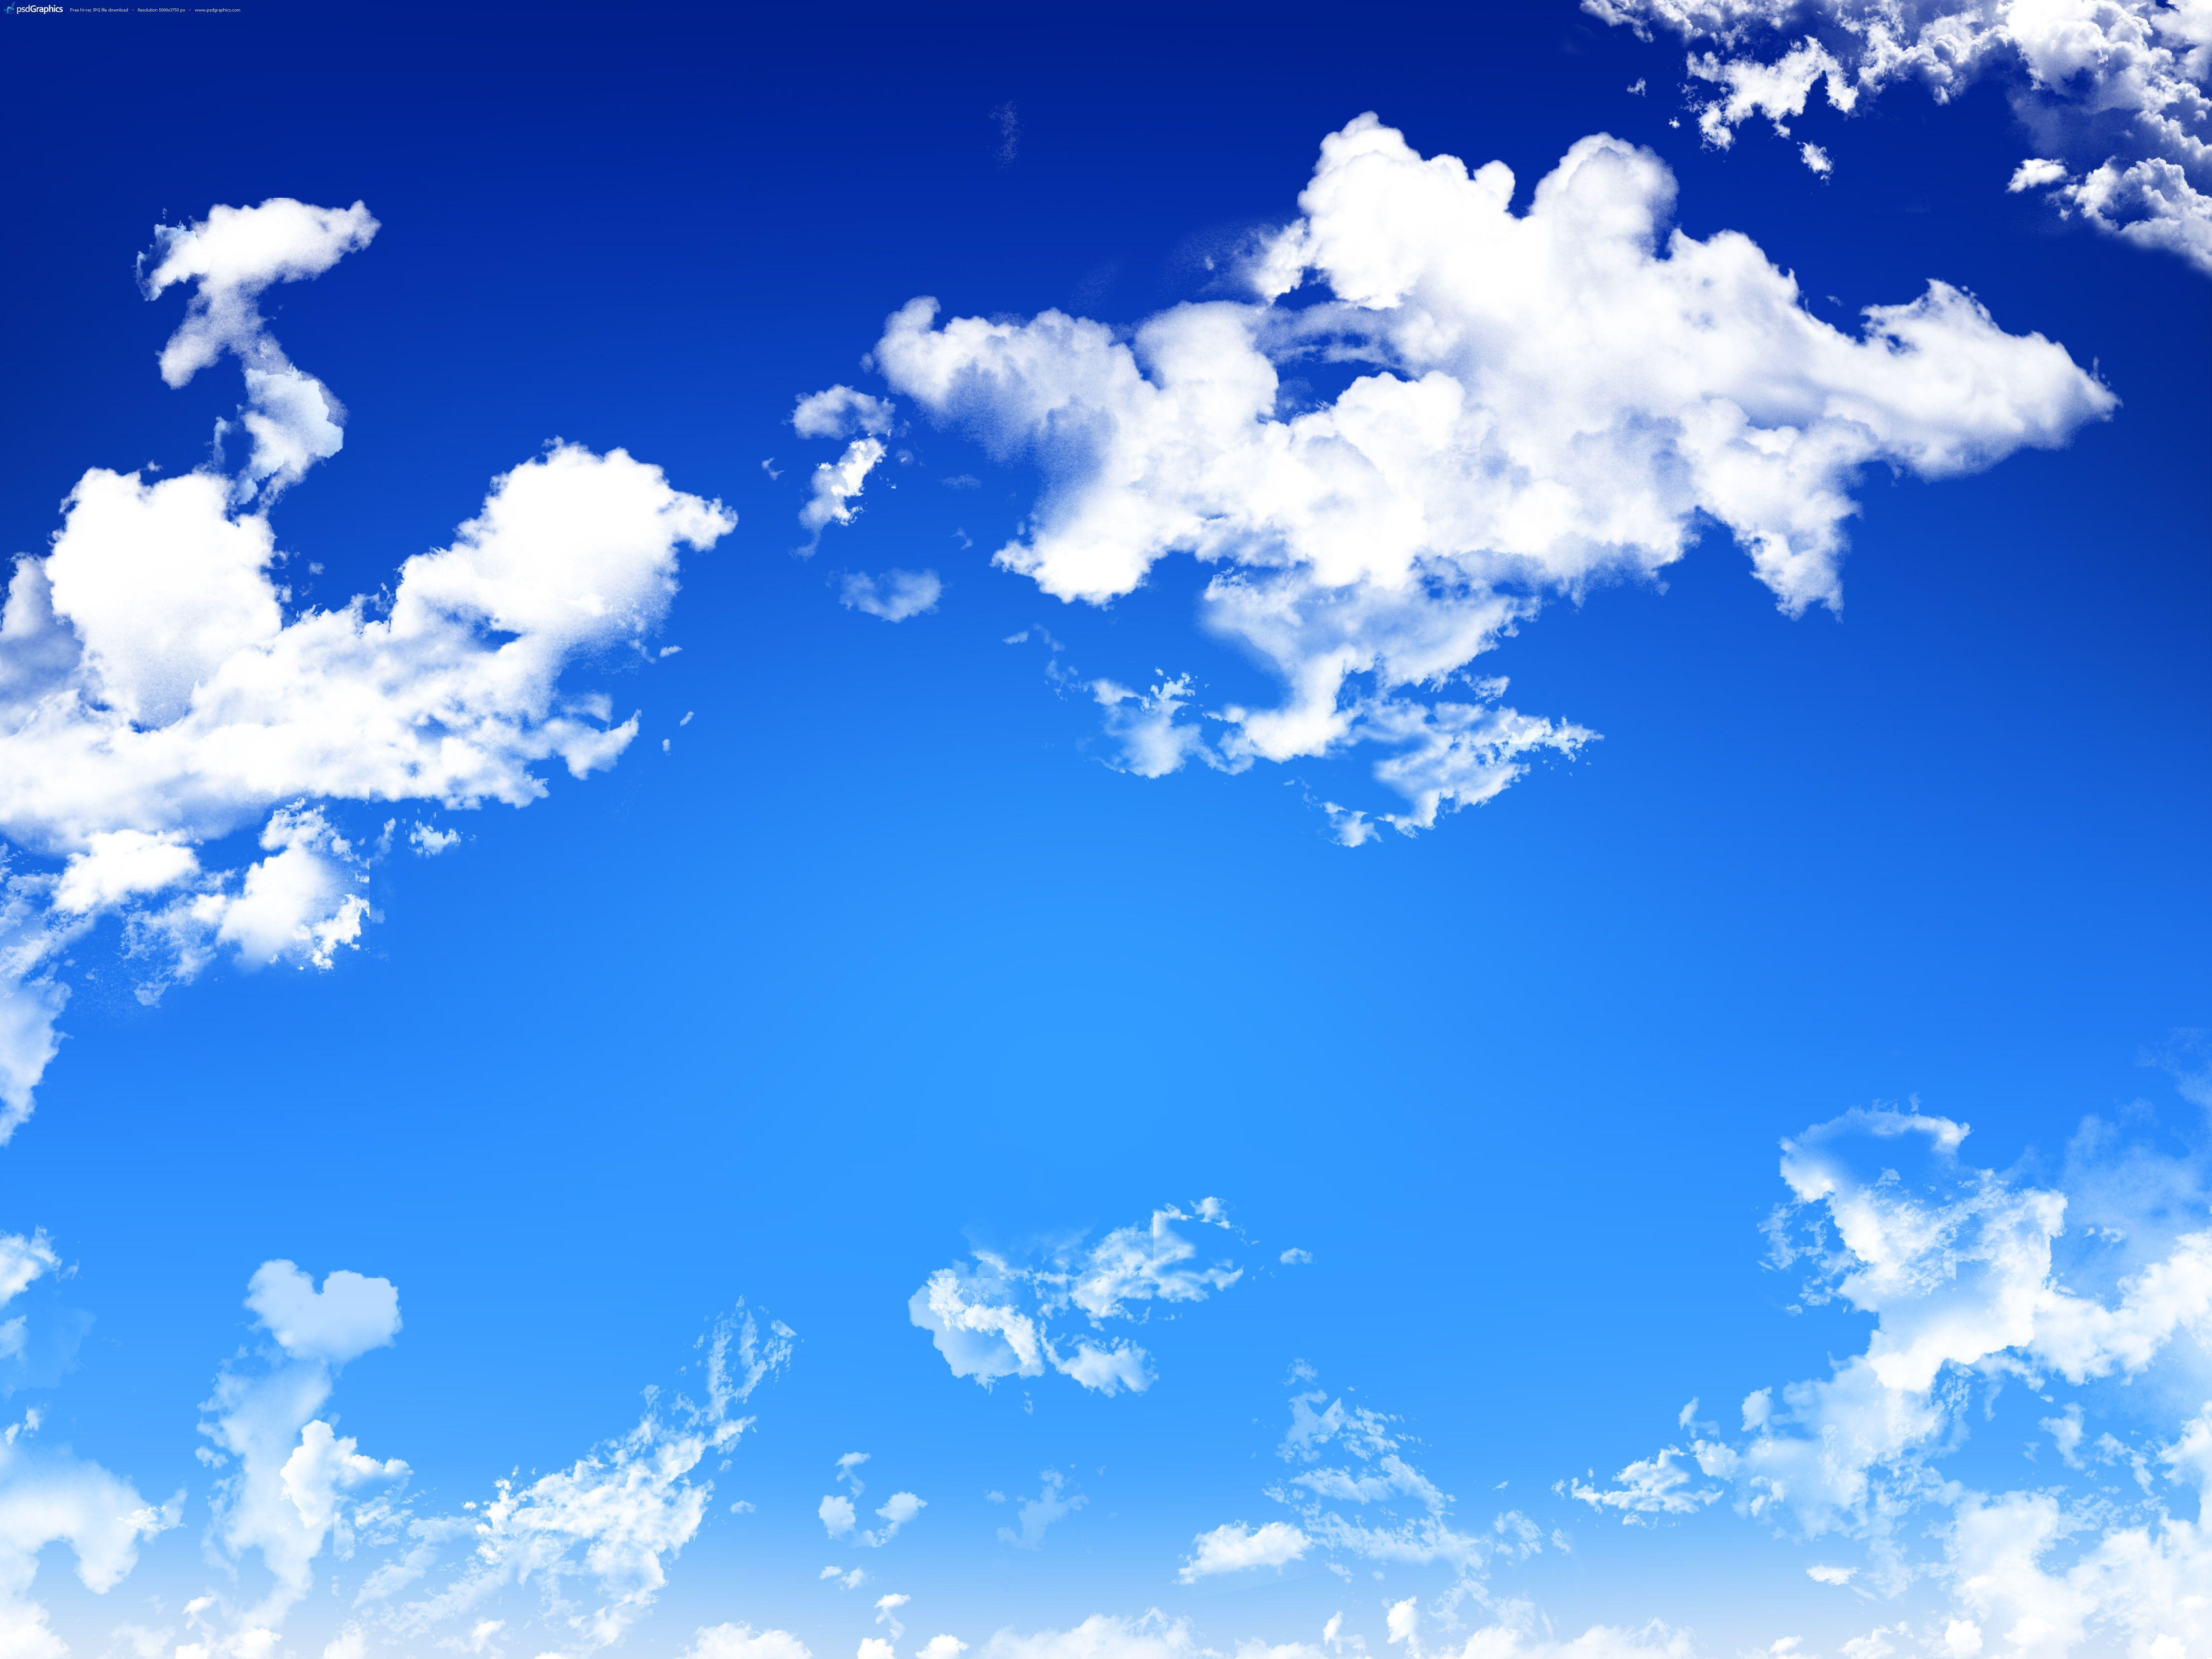 Hãy chiêm ngưỡng bầu trời xanh như tuyệt phẩm nghệ thuật với những đám mây phong phú và tràn đầy sức sống. Sự kết hợp giữa màu xanh của bầu trời và những đám mây rực rỡ sẽ mang lại cho bạn một trải nghiệm đầy tinh thần sảng khoái.